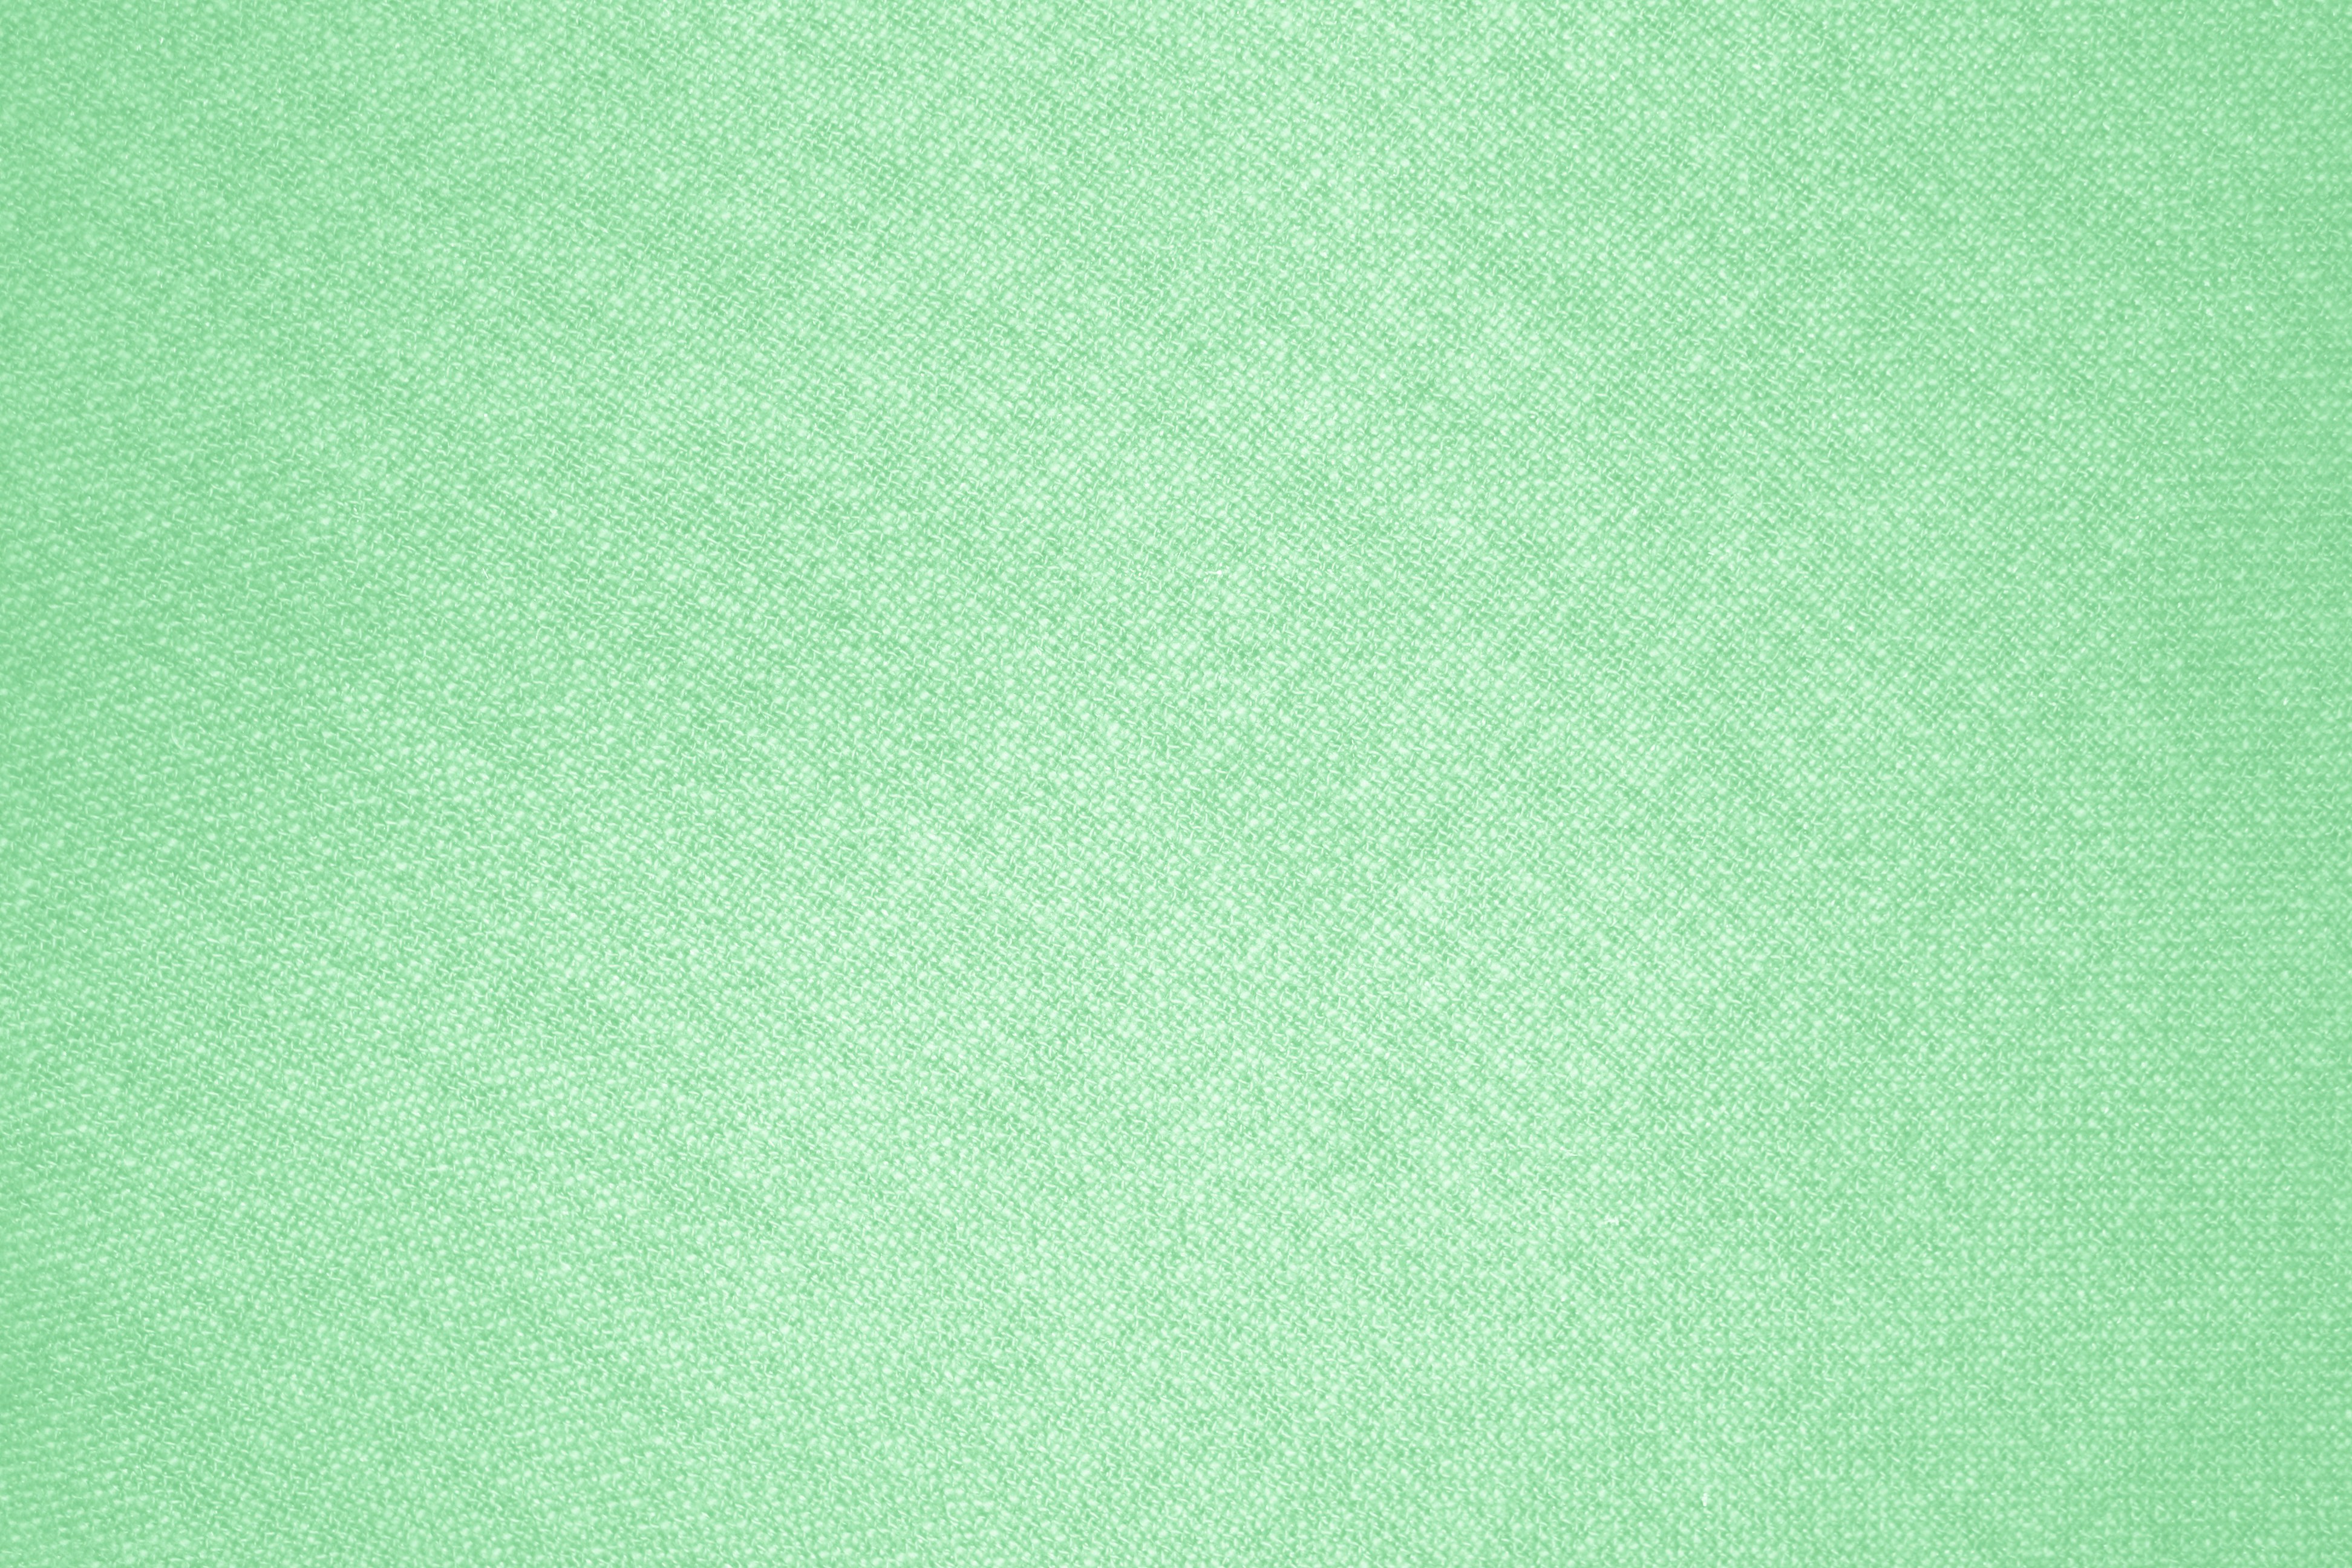 background light green texture